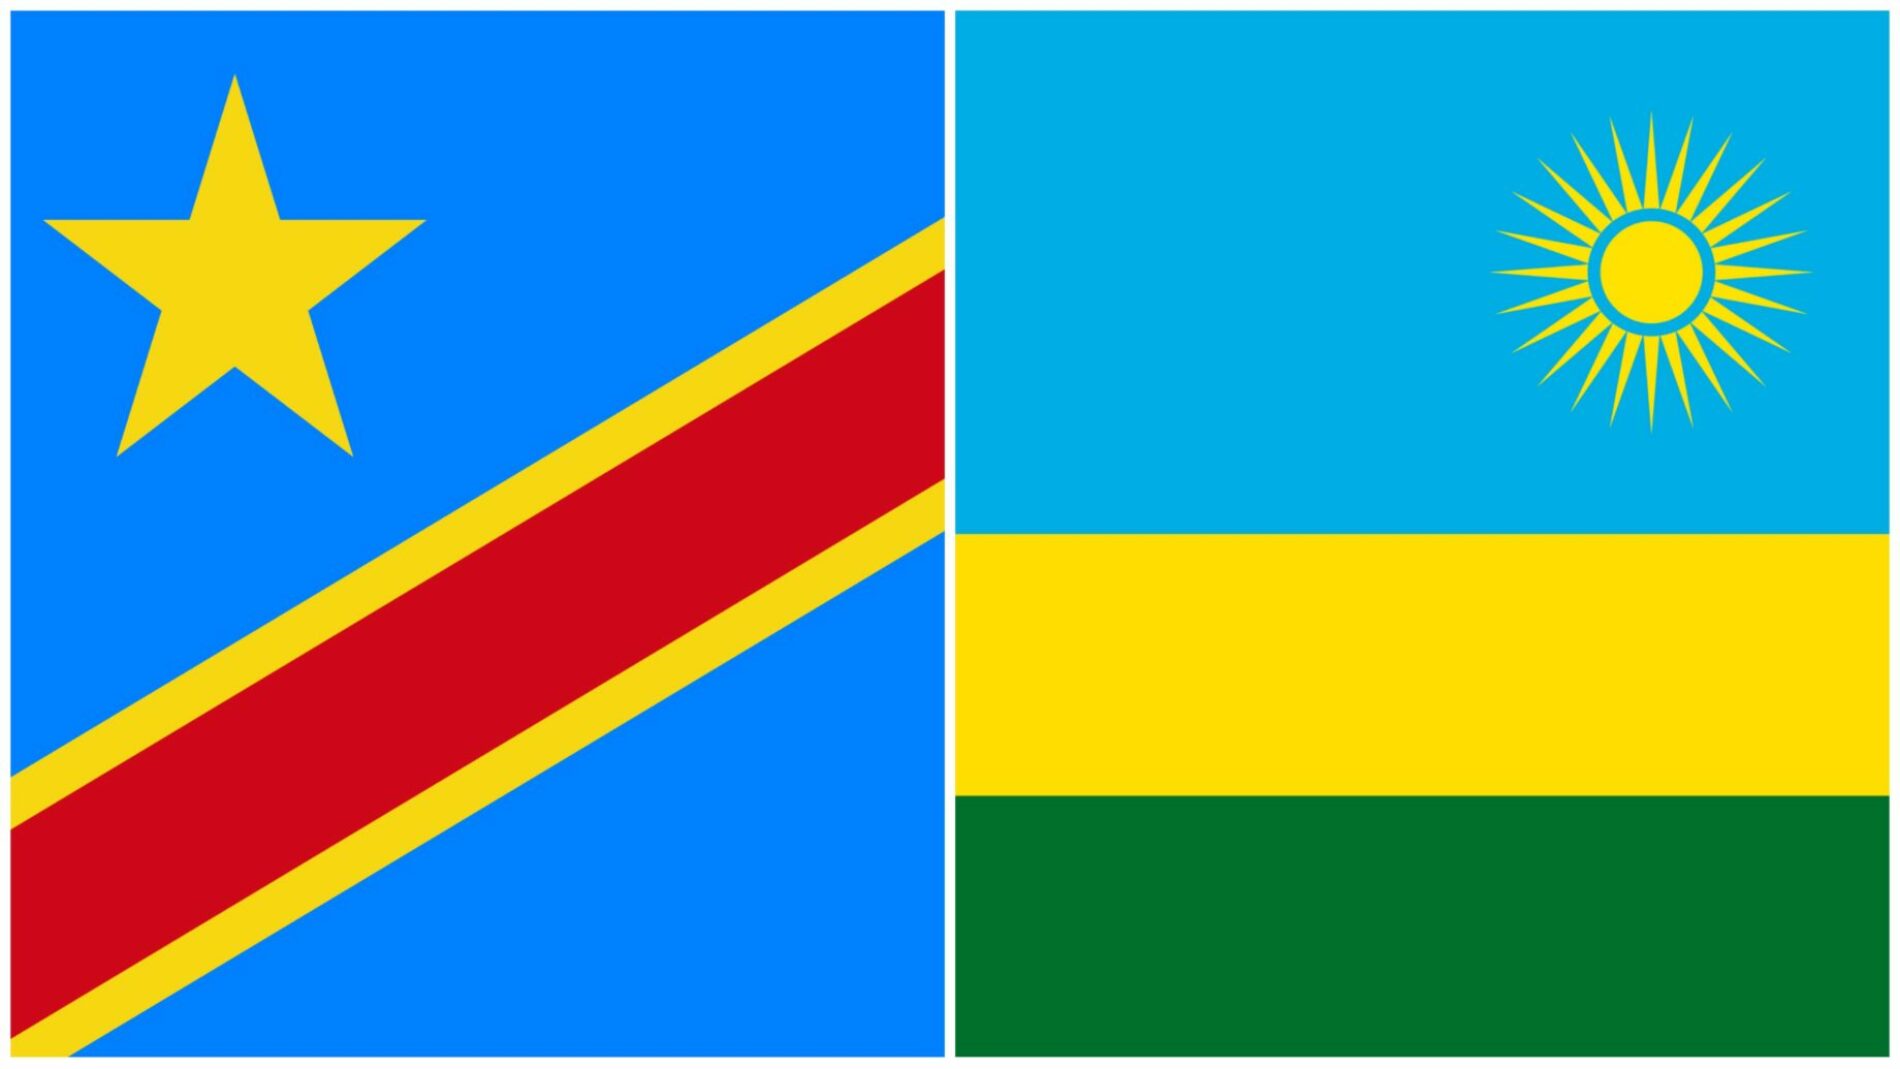 Rwanda-DRC : jeshi la Rwanda lashambulia ndege ya kivita ya Kongo ndani ya anga ya Kongo (Tangazo)